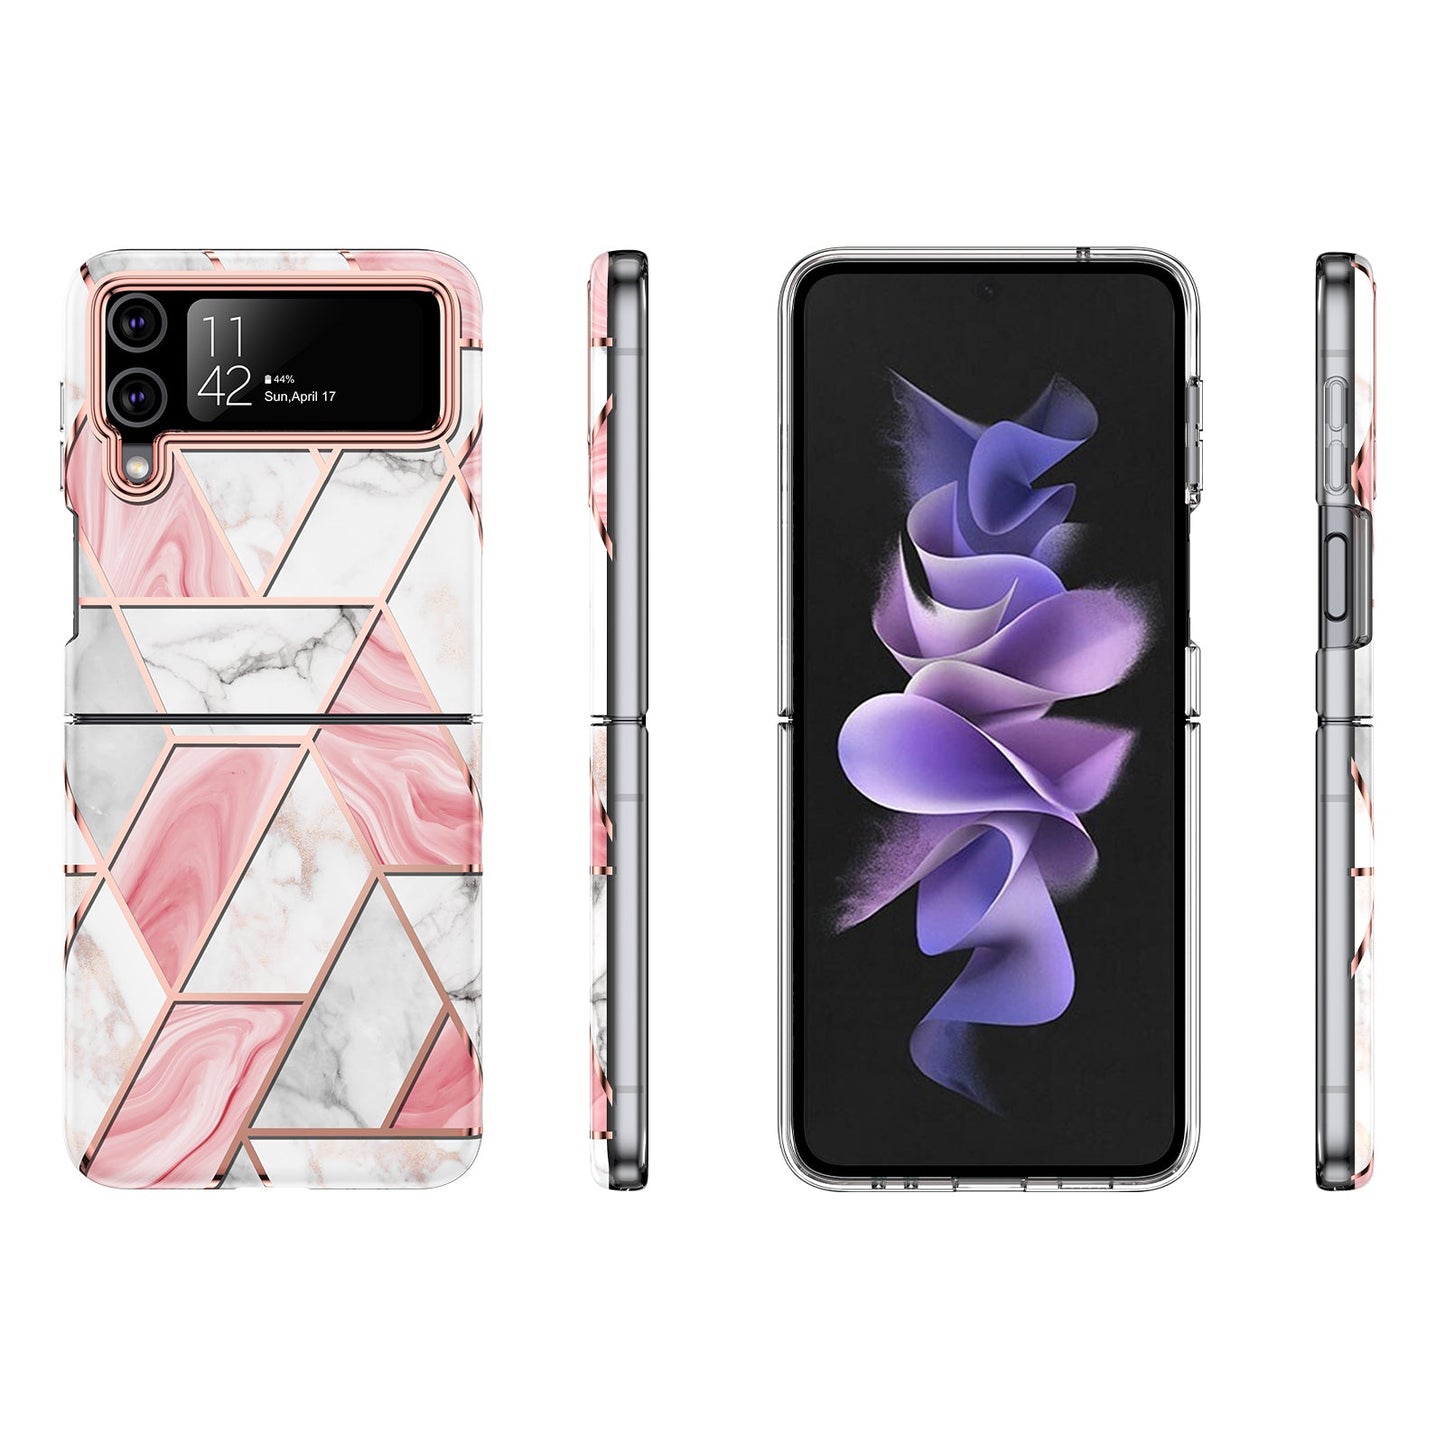 Samsung Galaxy Z flip 3 Case : Pink Art